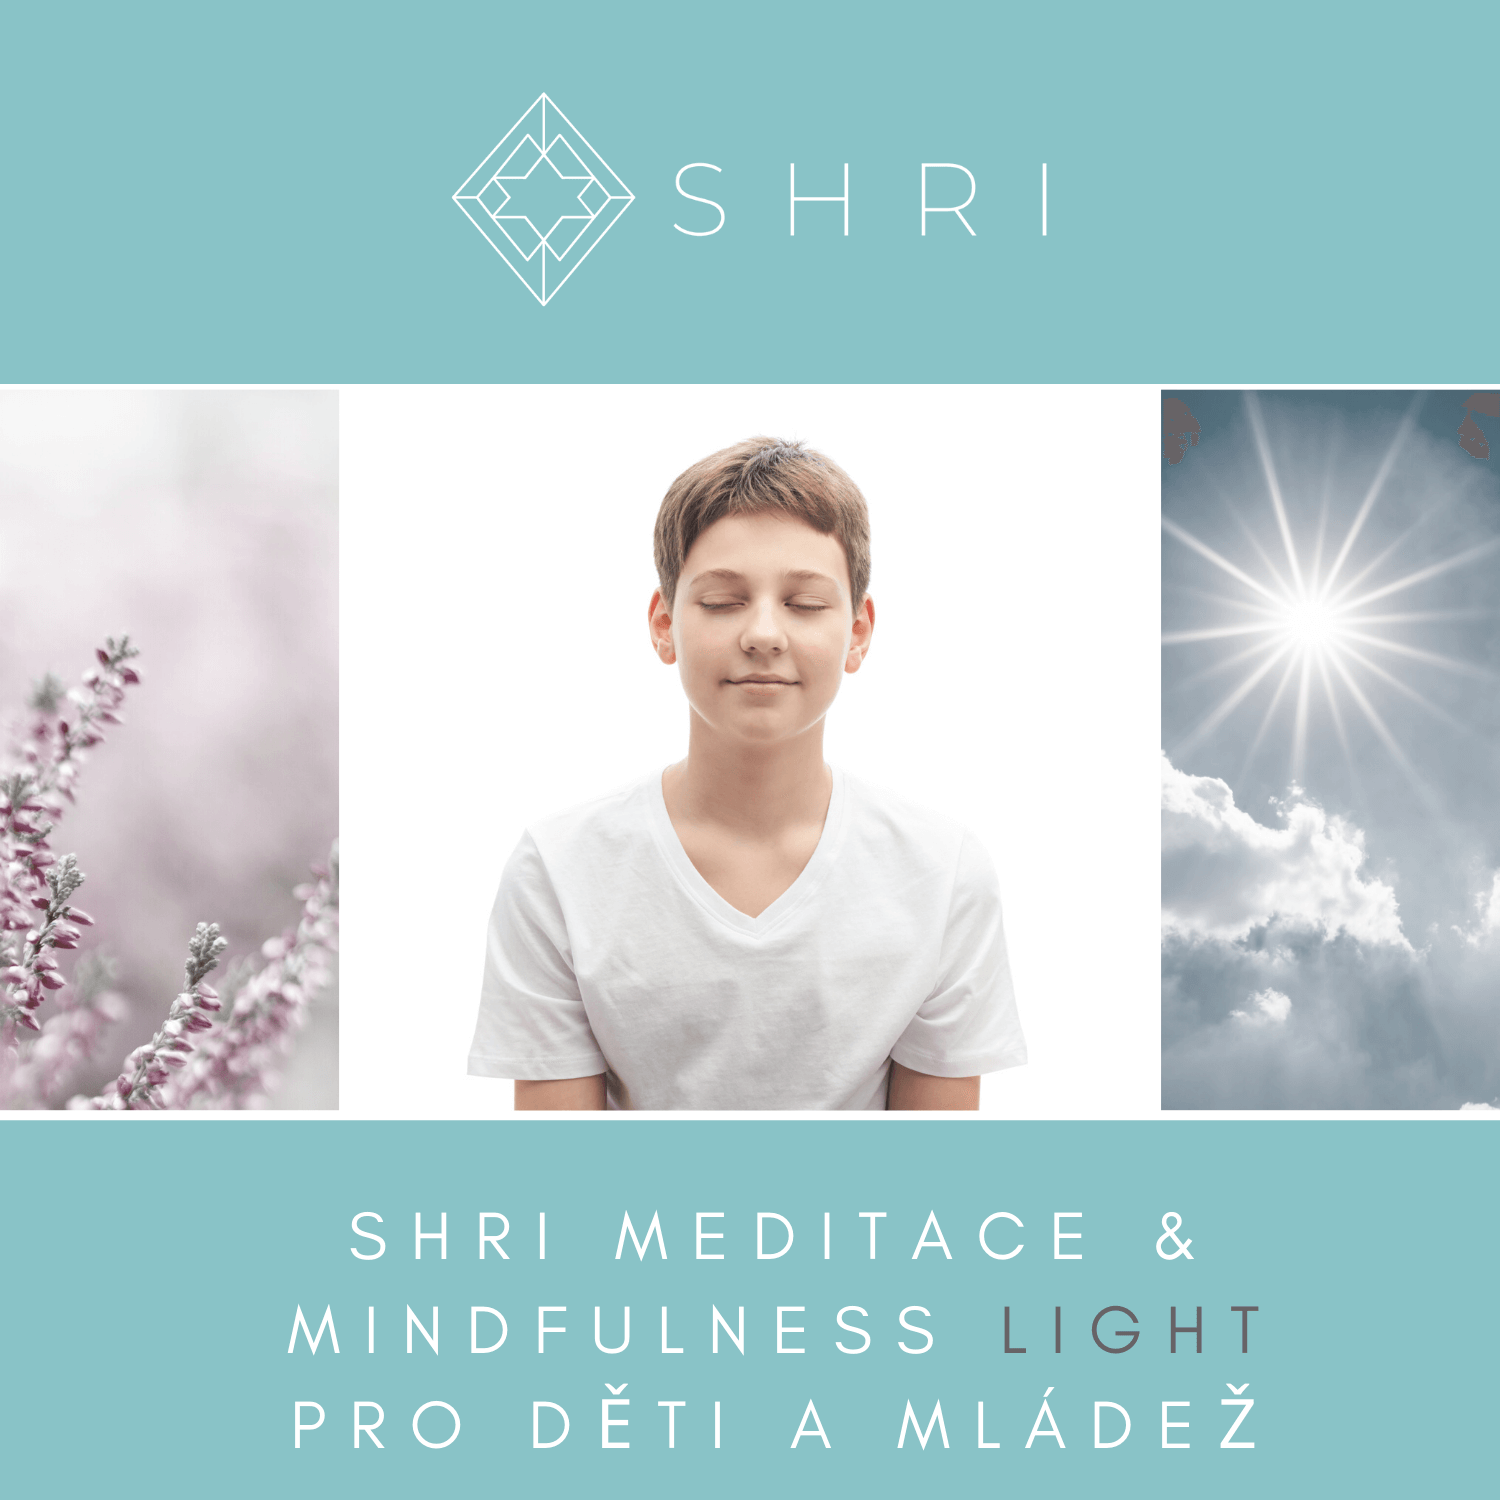 SHRI Meditace & Mindfulness Light kurz pro děti a mládež